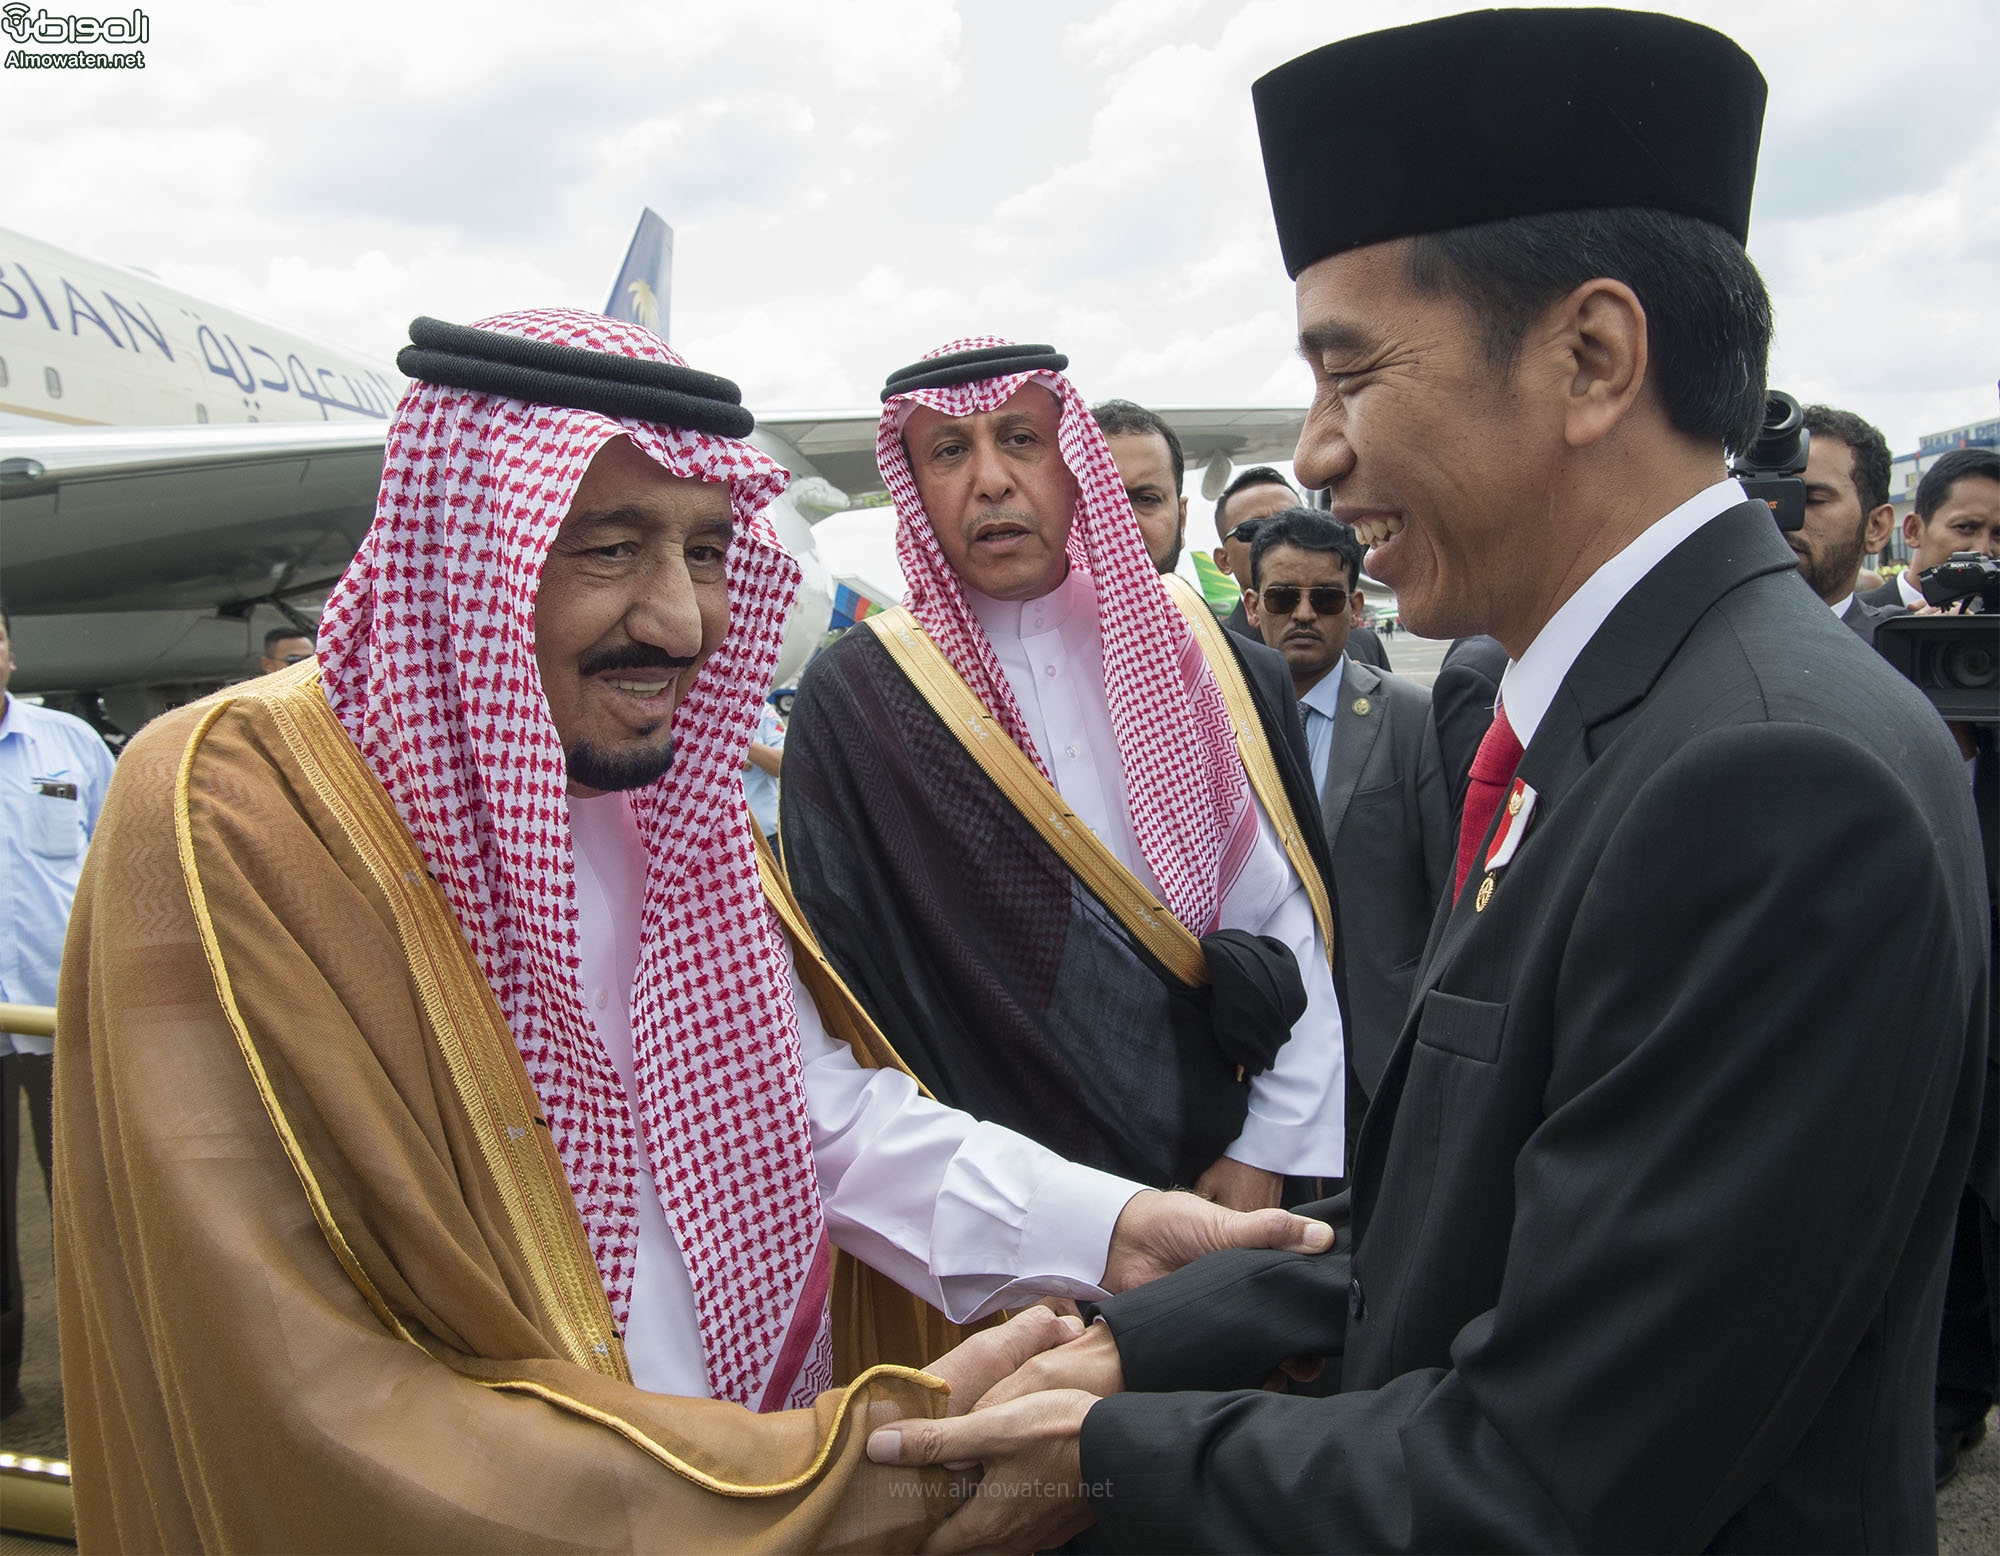 بالصور .. رئيس إندونيسيا في مقدمة مستقبلي الملك سلمان بمطار جاكرتا